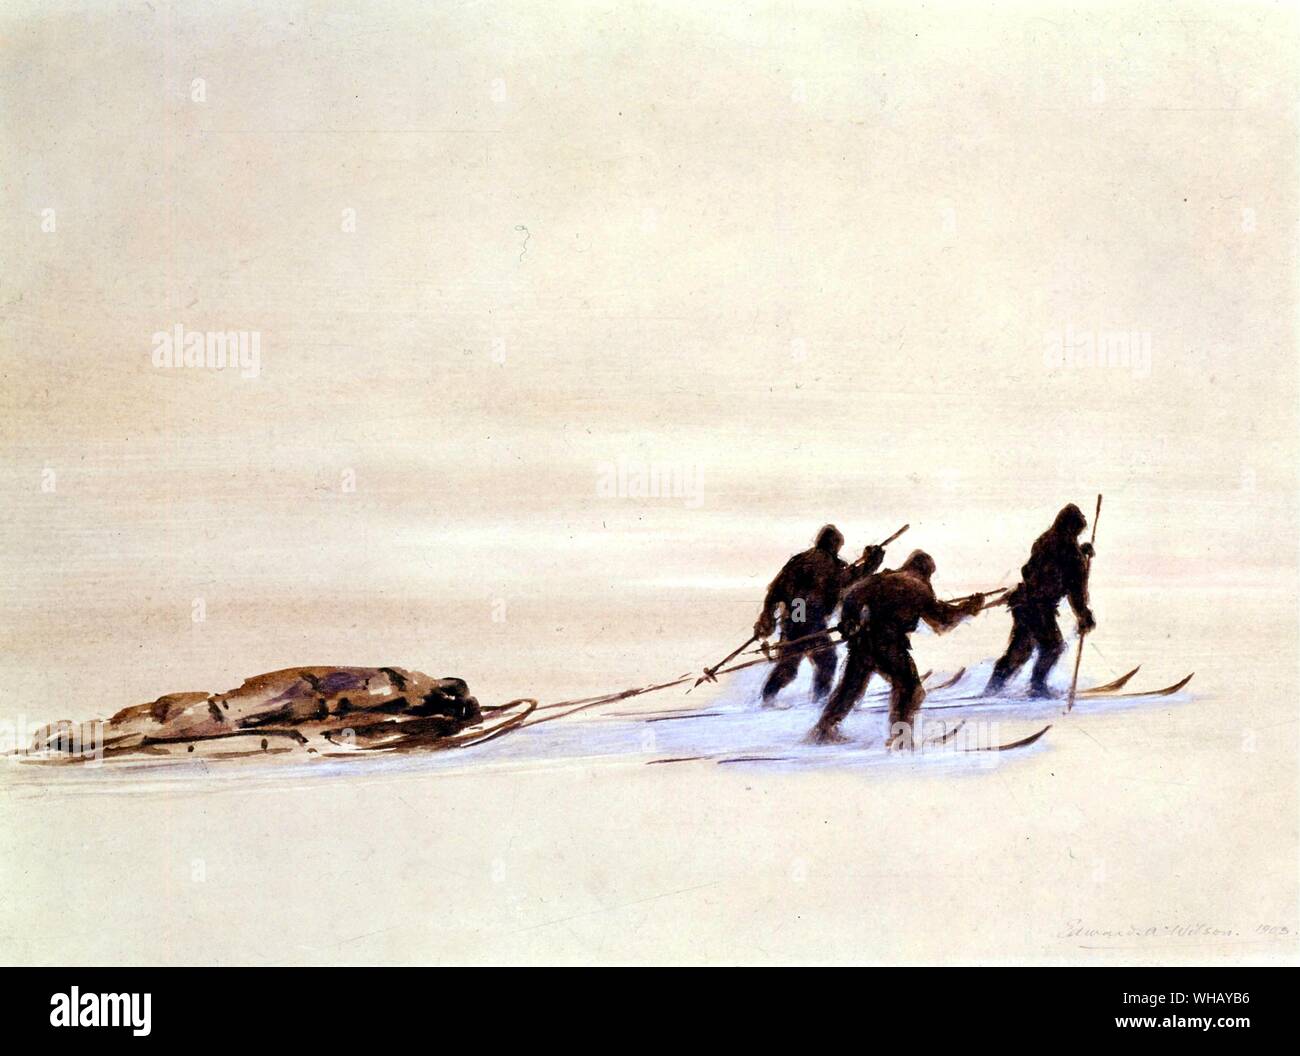 Transport de traîneau en skis sur une journée grise sur la Grande Barrière de Glace, par Edward Wilson (1872-1912). L'expédition Terra Nova (1910-1913). Antarctique : le dernier continent par Ian Cameron, page 187. Banque D'Images